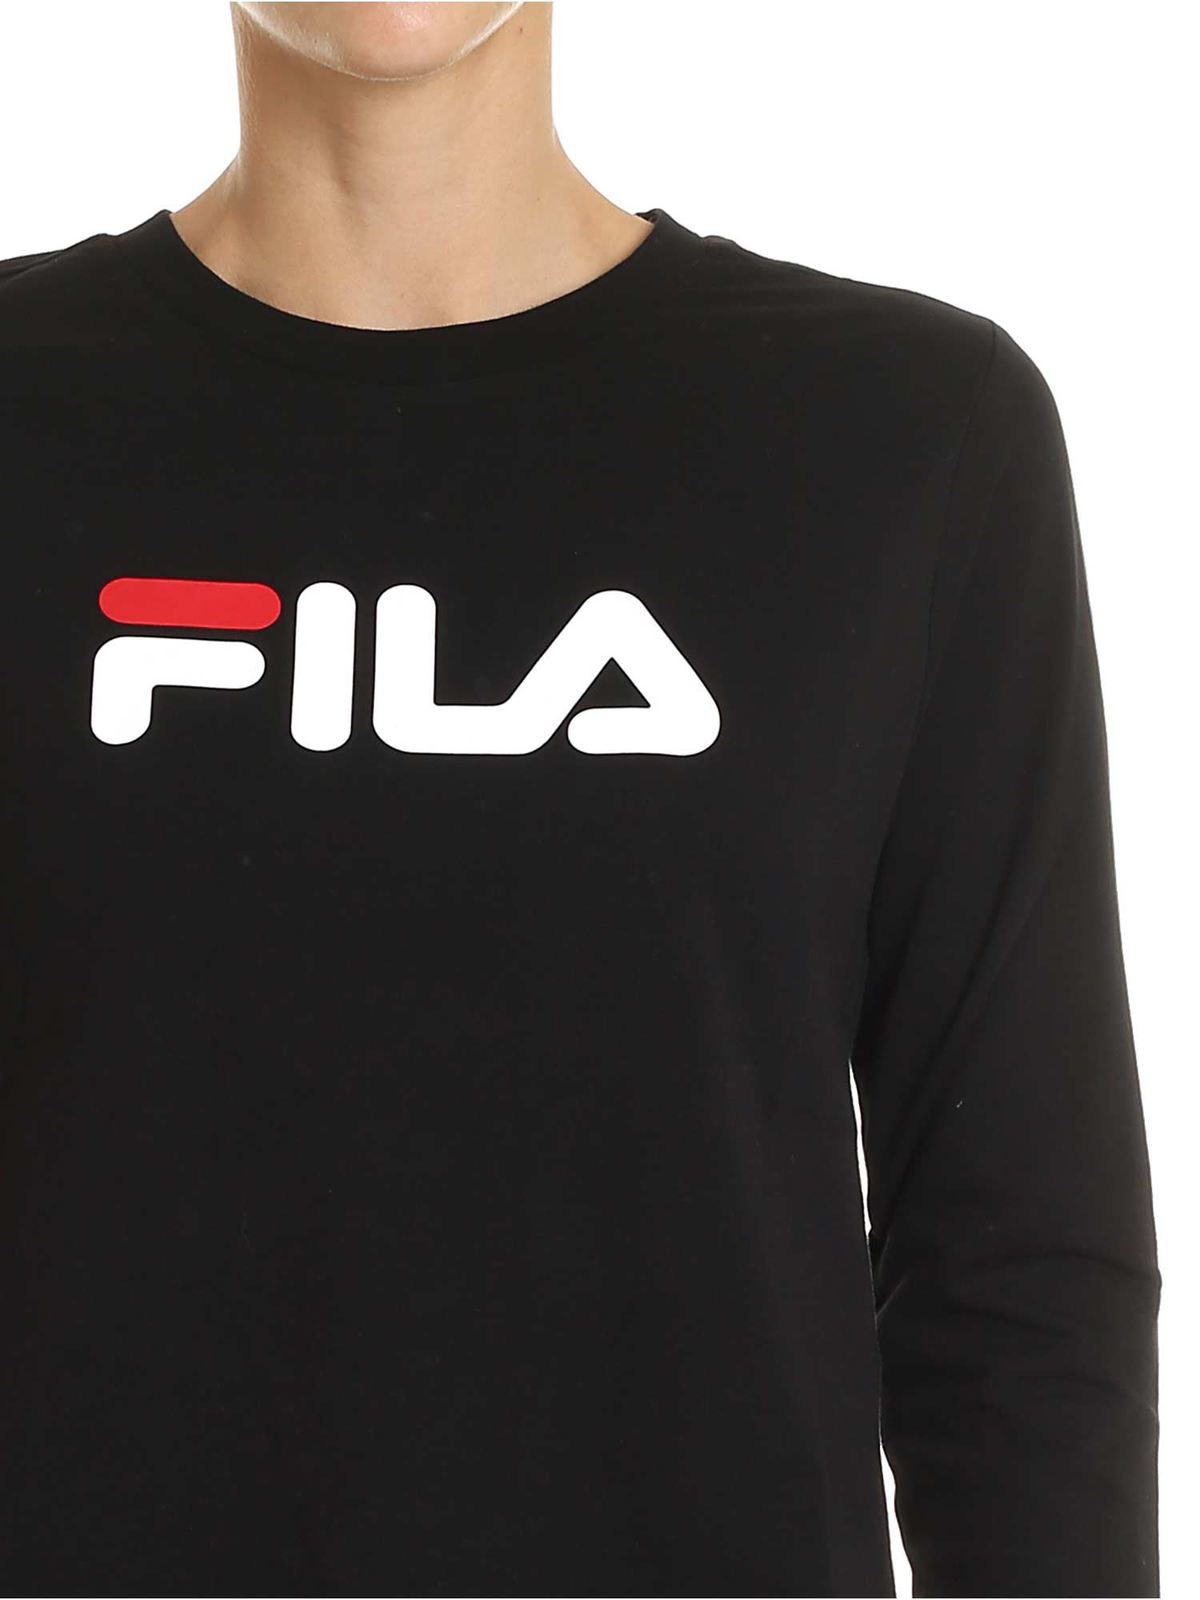 drøm Af storm høj T-shirts Fila - Marceline T-shirt in black - 687213002